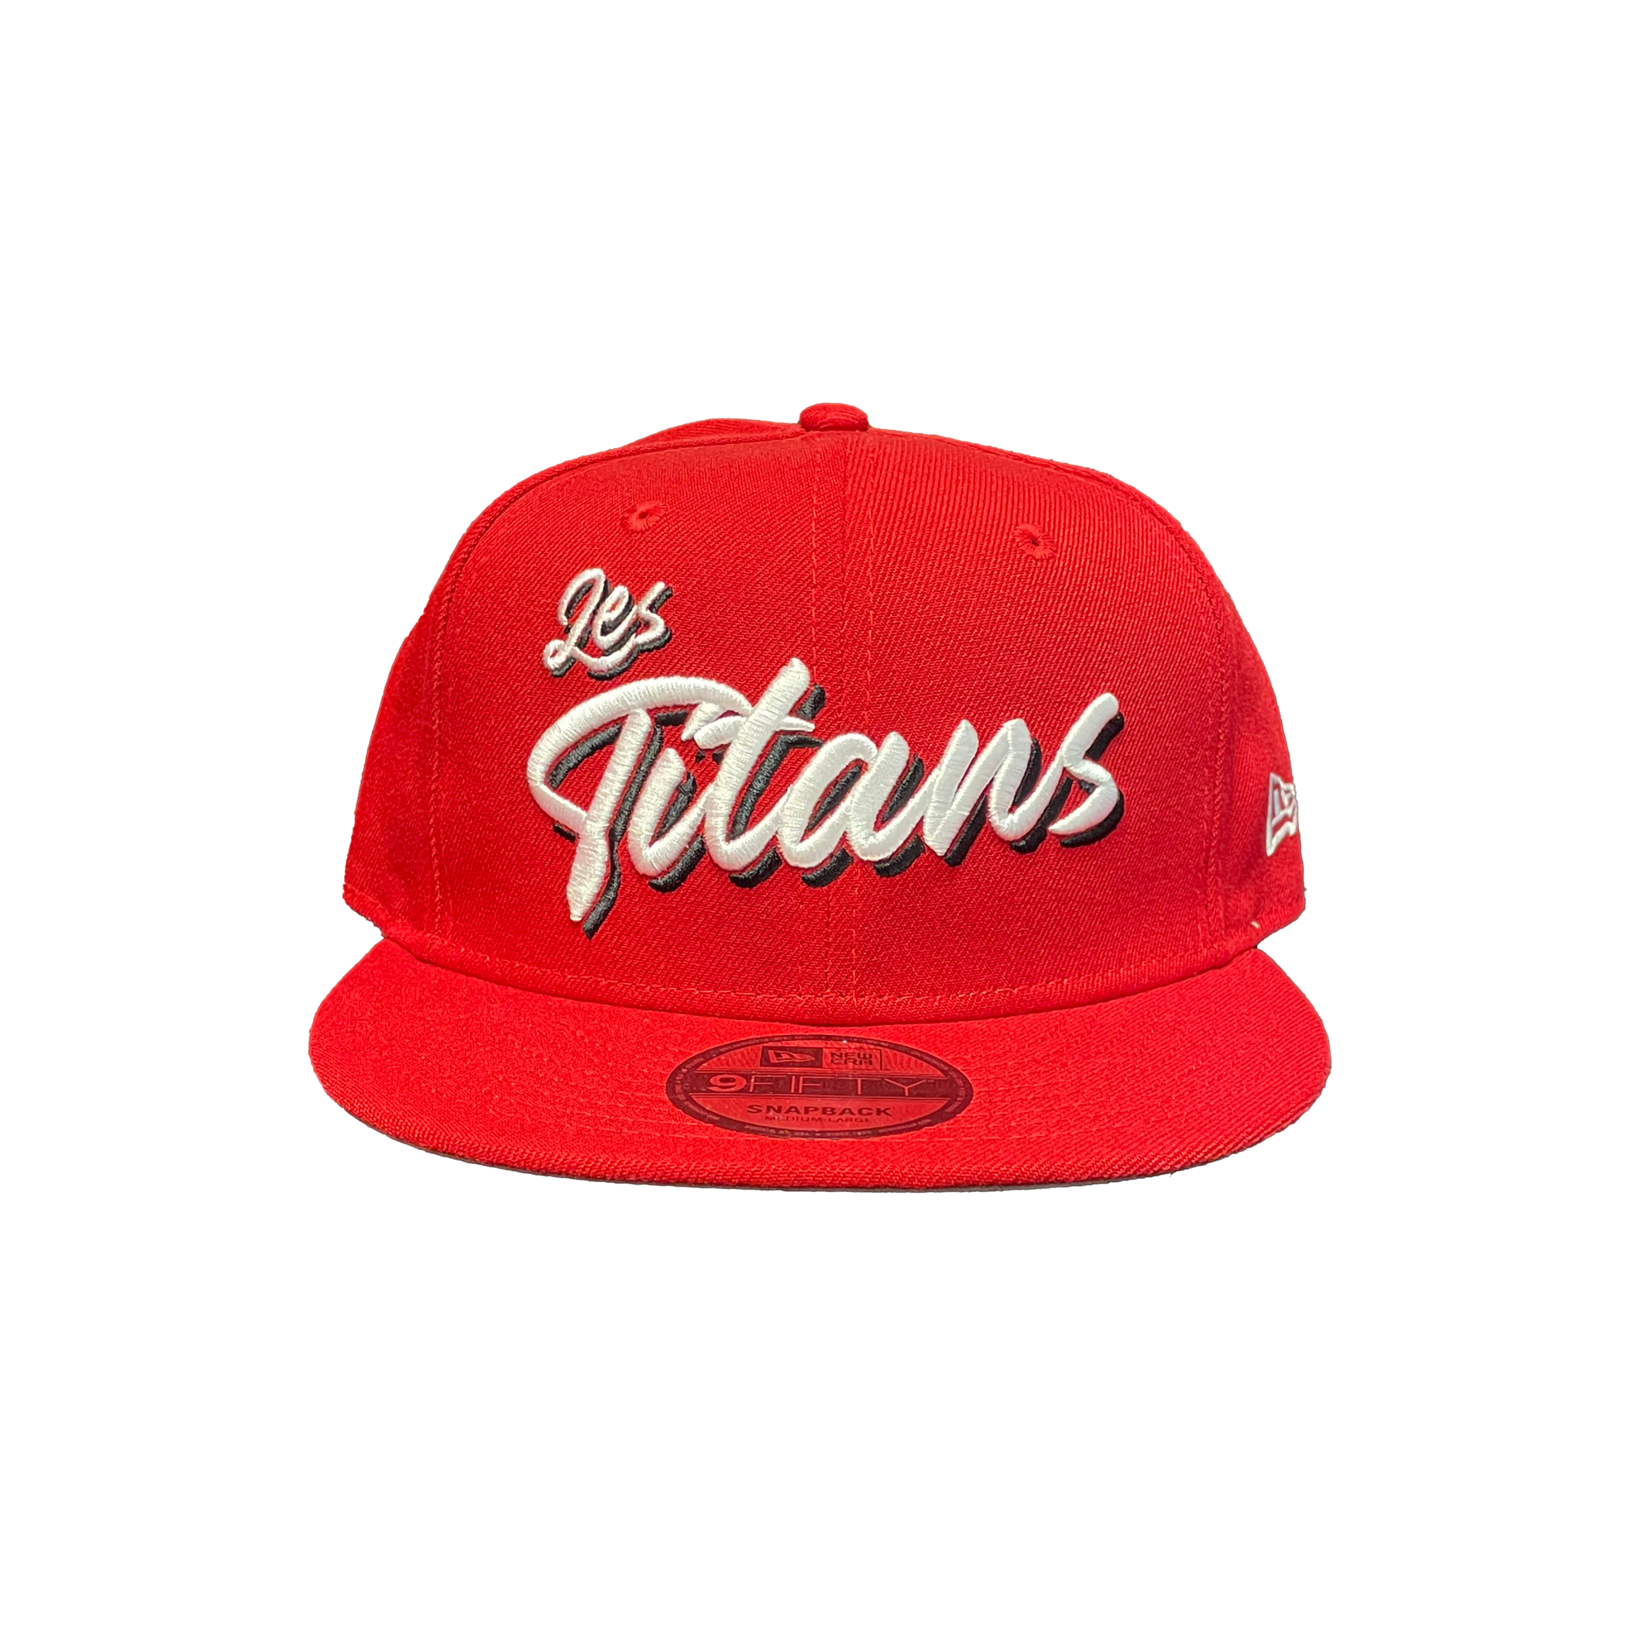 NEW ERA TITANS 950 LES TITANS RED CAP